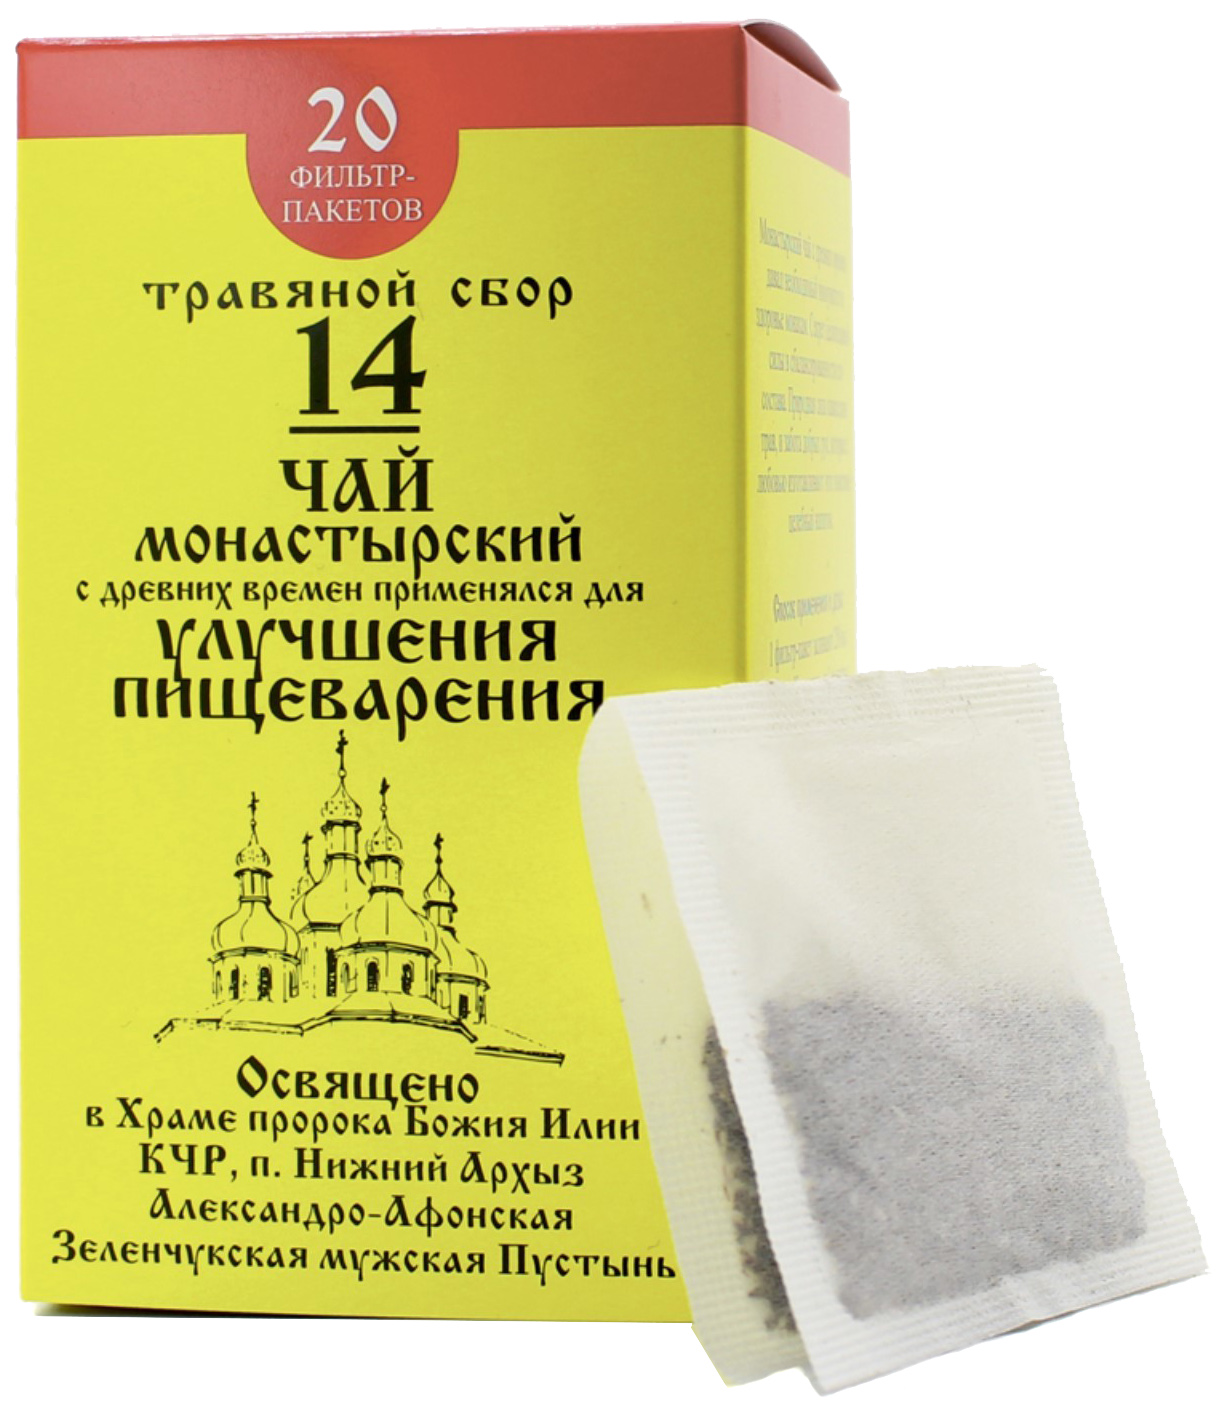 Чай Монастырский №14 Бизорюк Фабрика здоровья для улучшения пищеварения ф/п 20 шт.